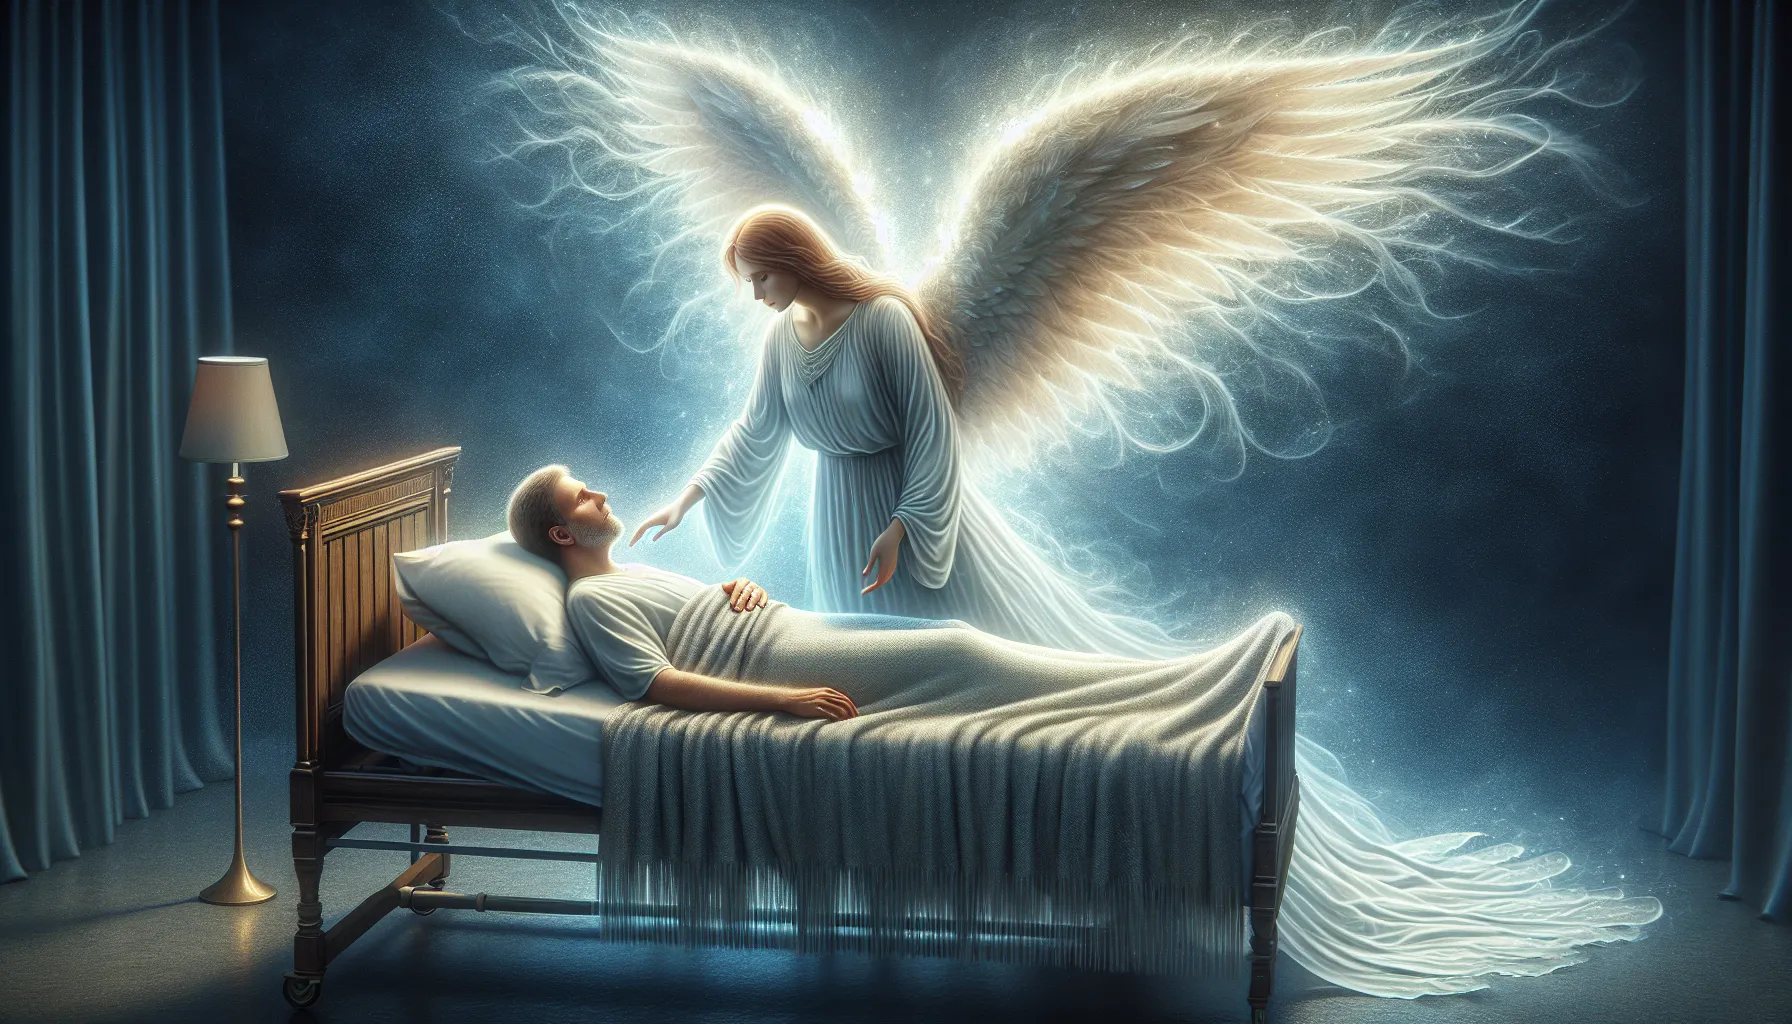 'Ilustración de un ángel consolando a una persona enferma, reflejando la presencia de Dios en medio de la enfermedad'.